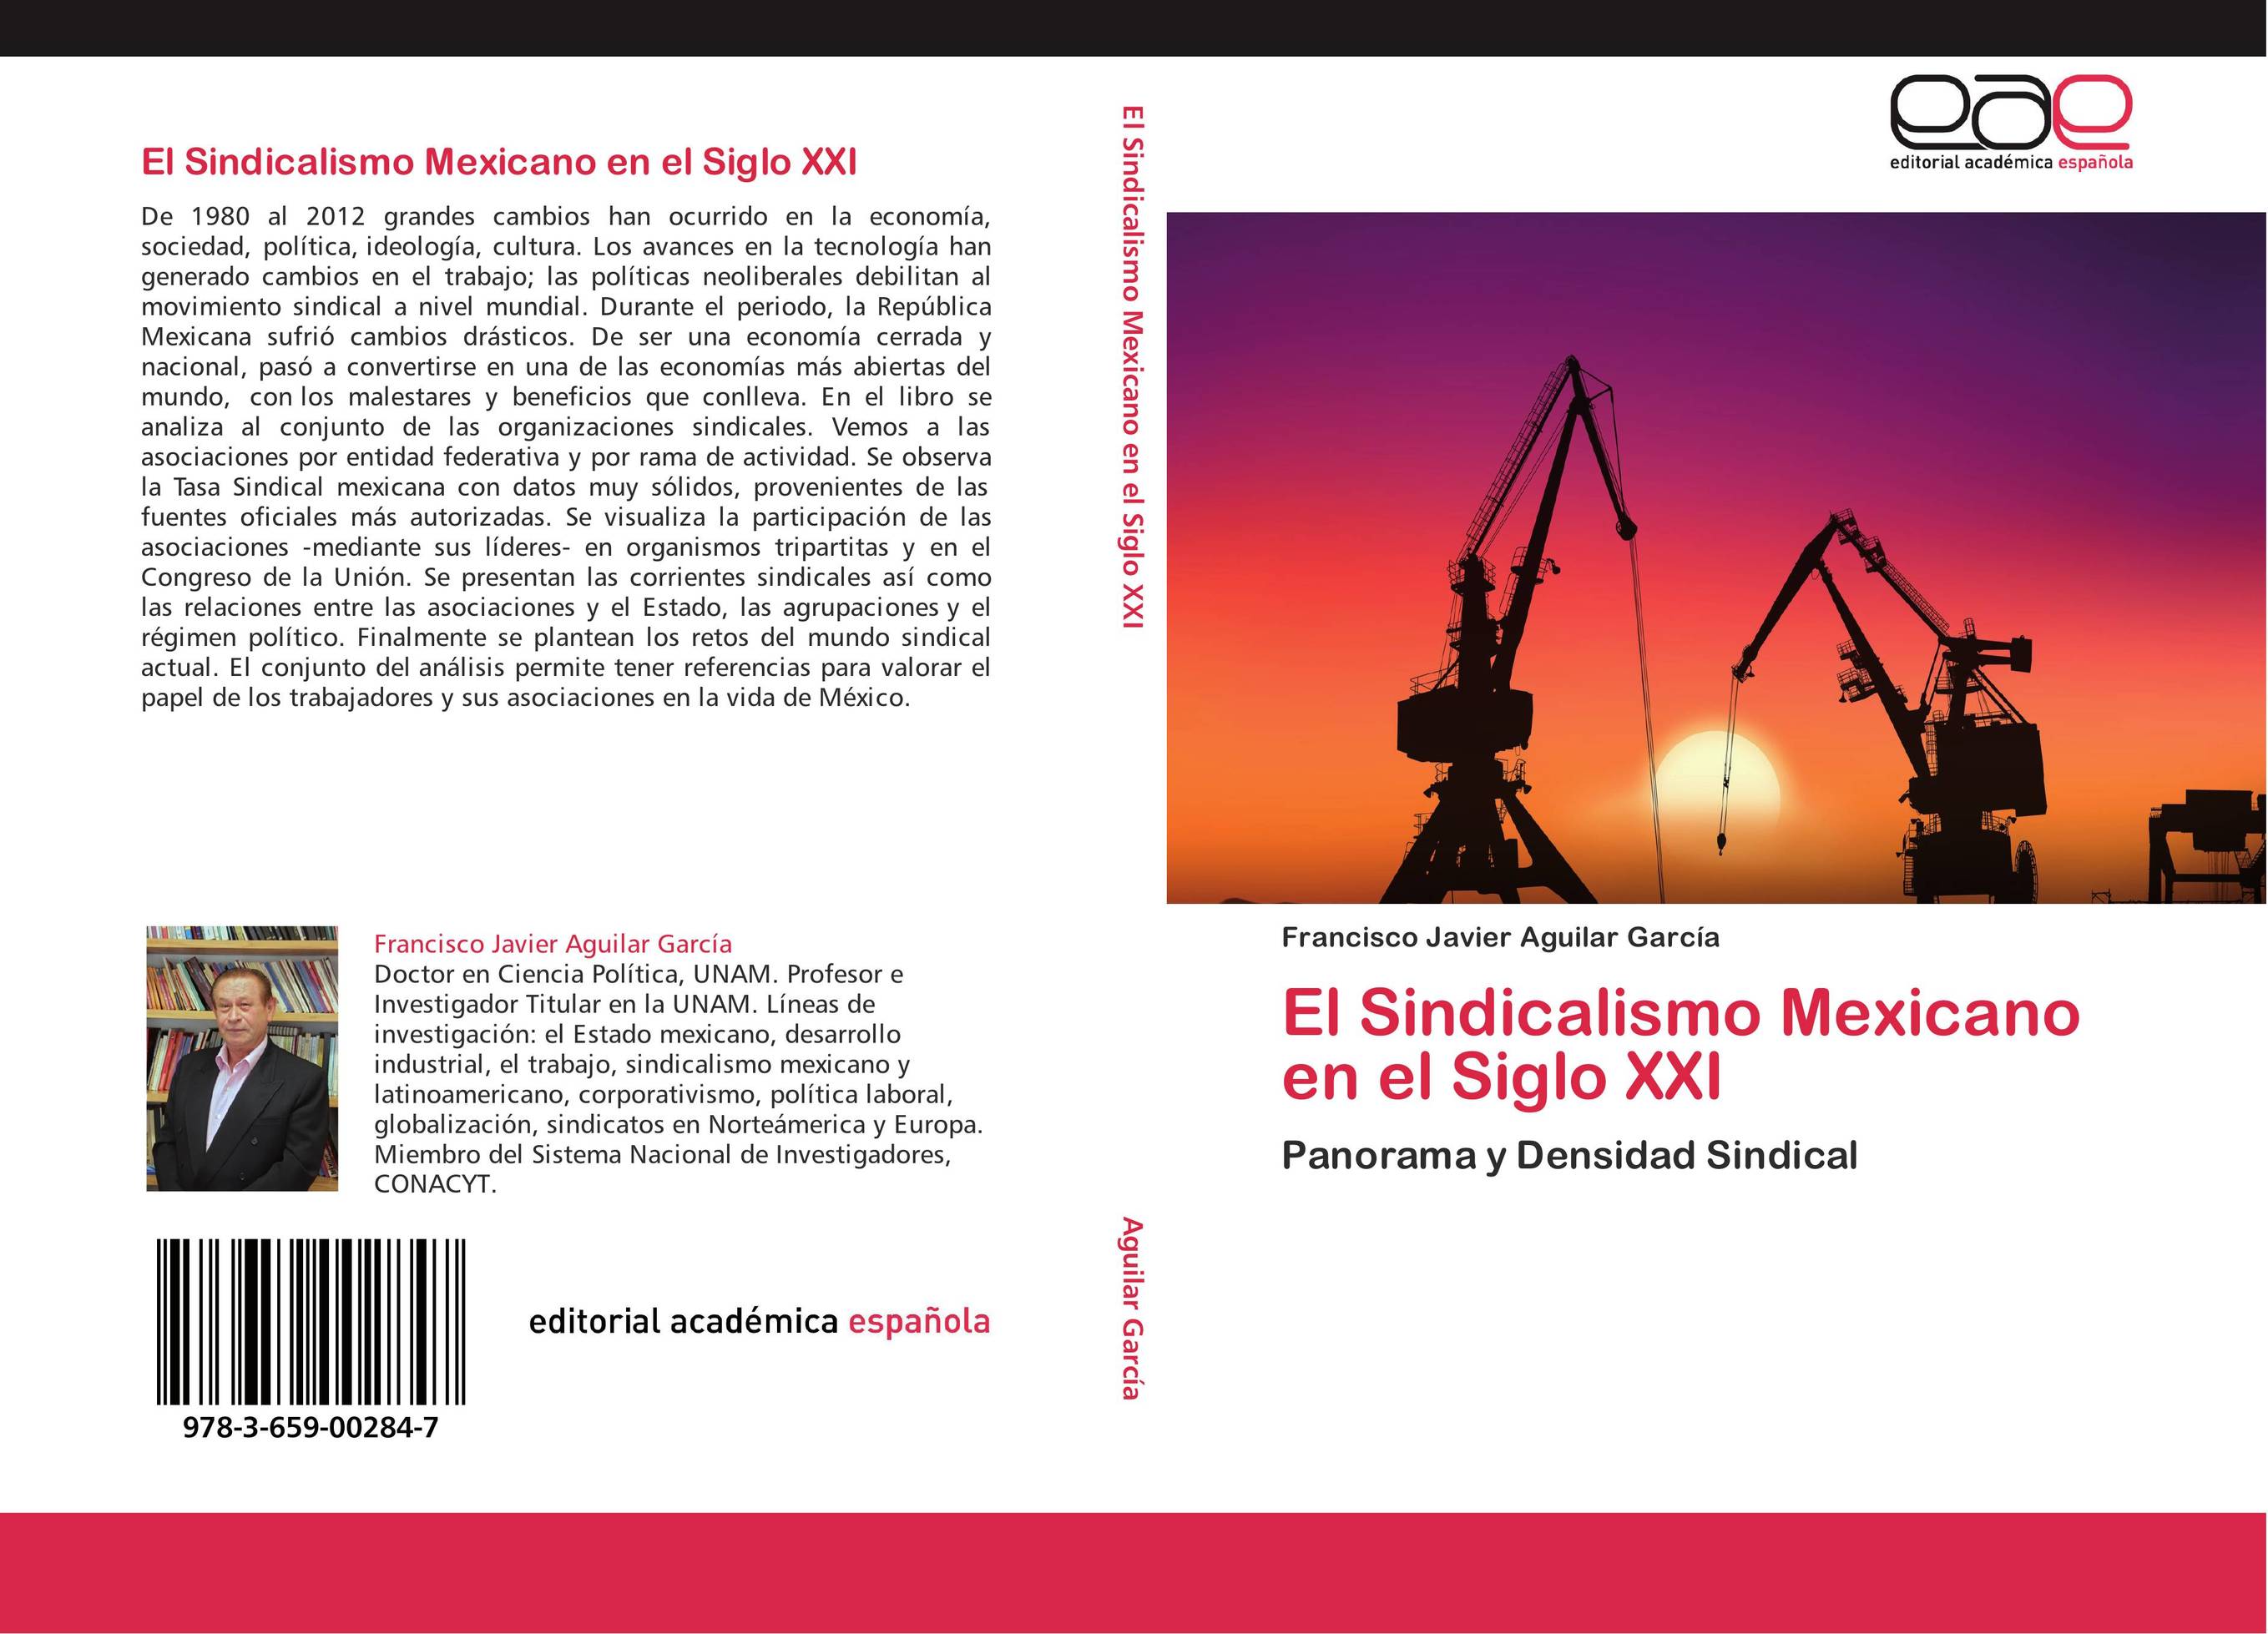 El Sindicalismo Mexicano en el Siglo XXI